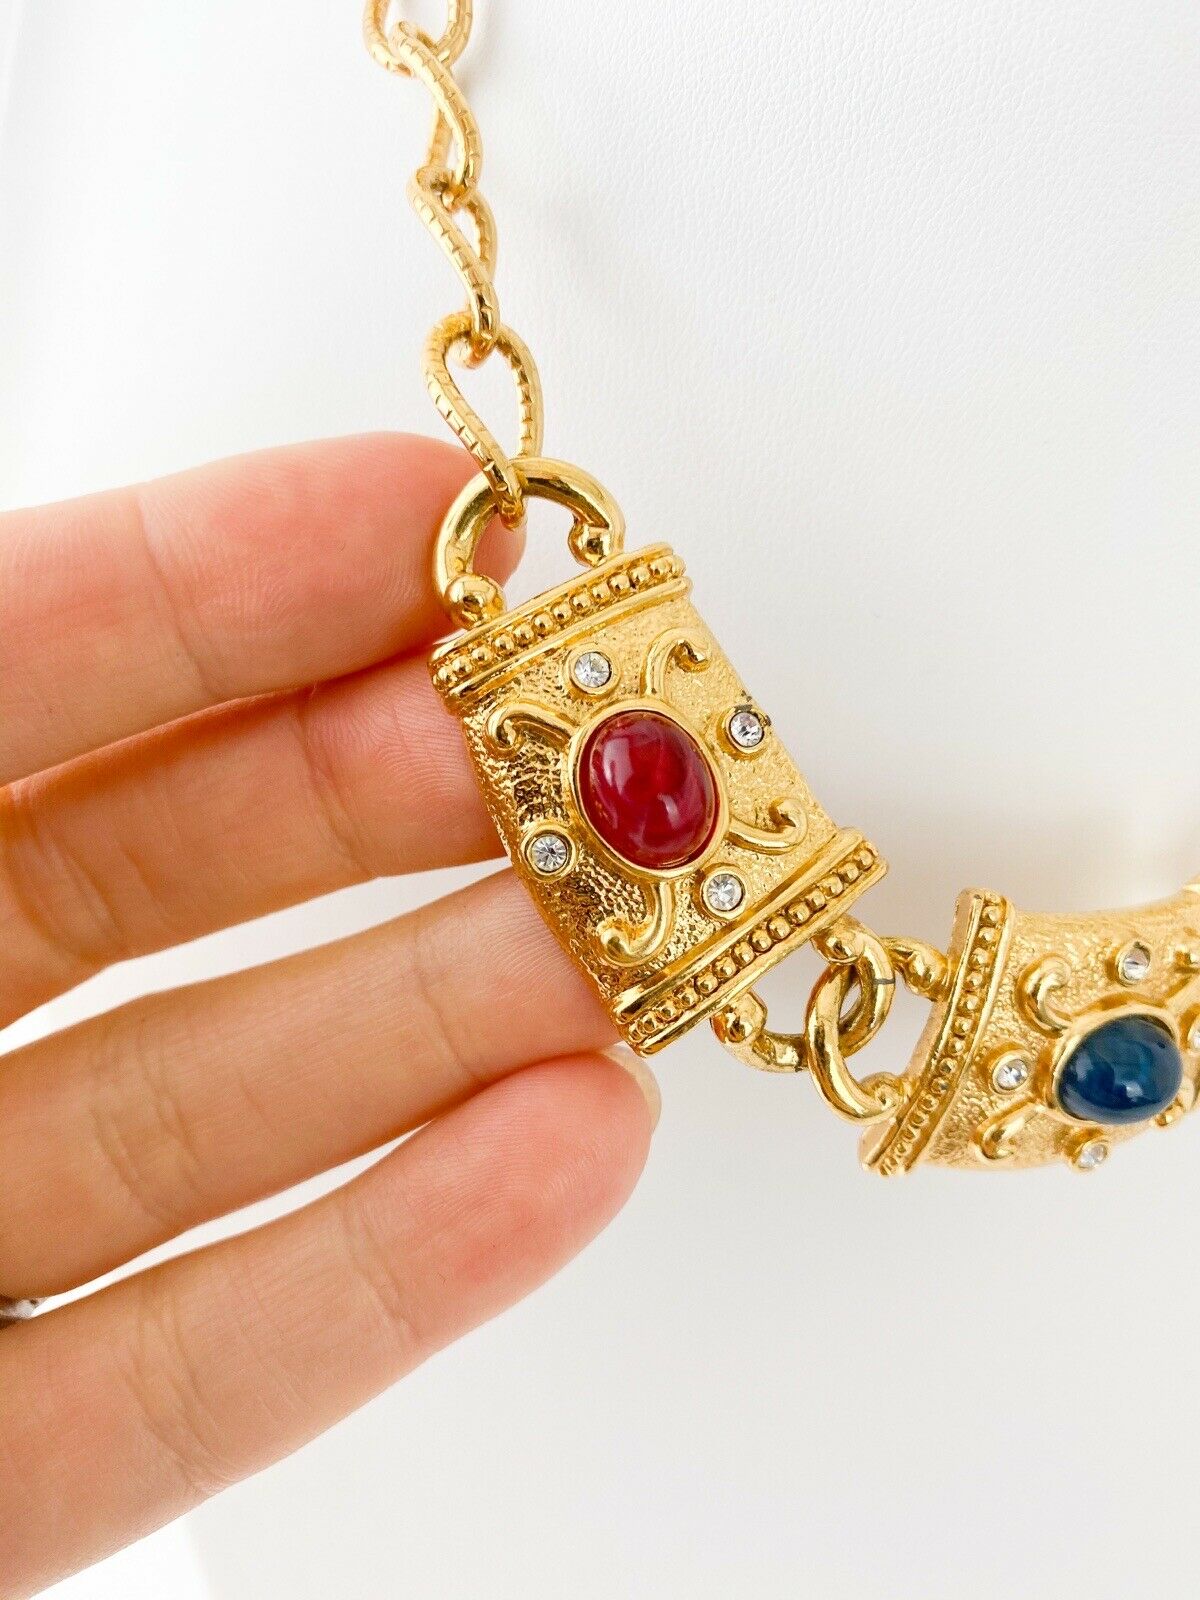 Avon Vintage Gold Tone Chain Necklace Multi-color Cabochon Charm